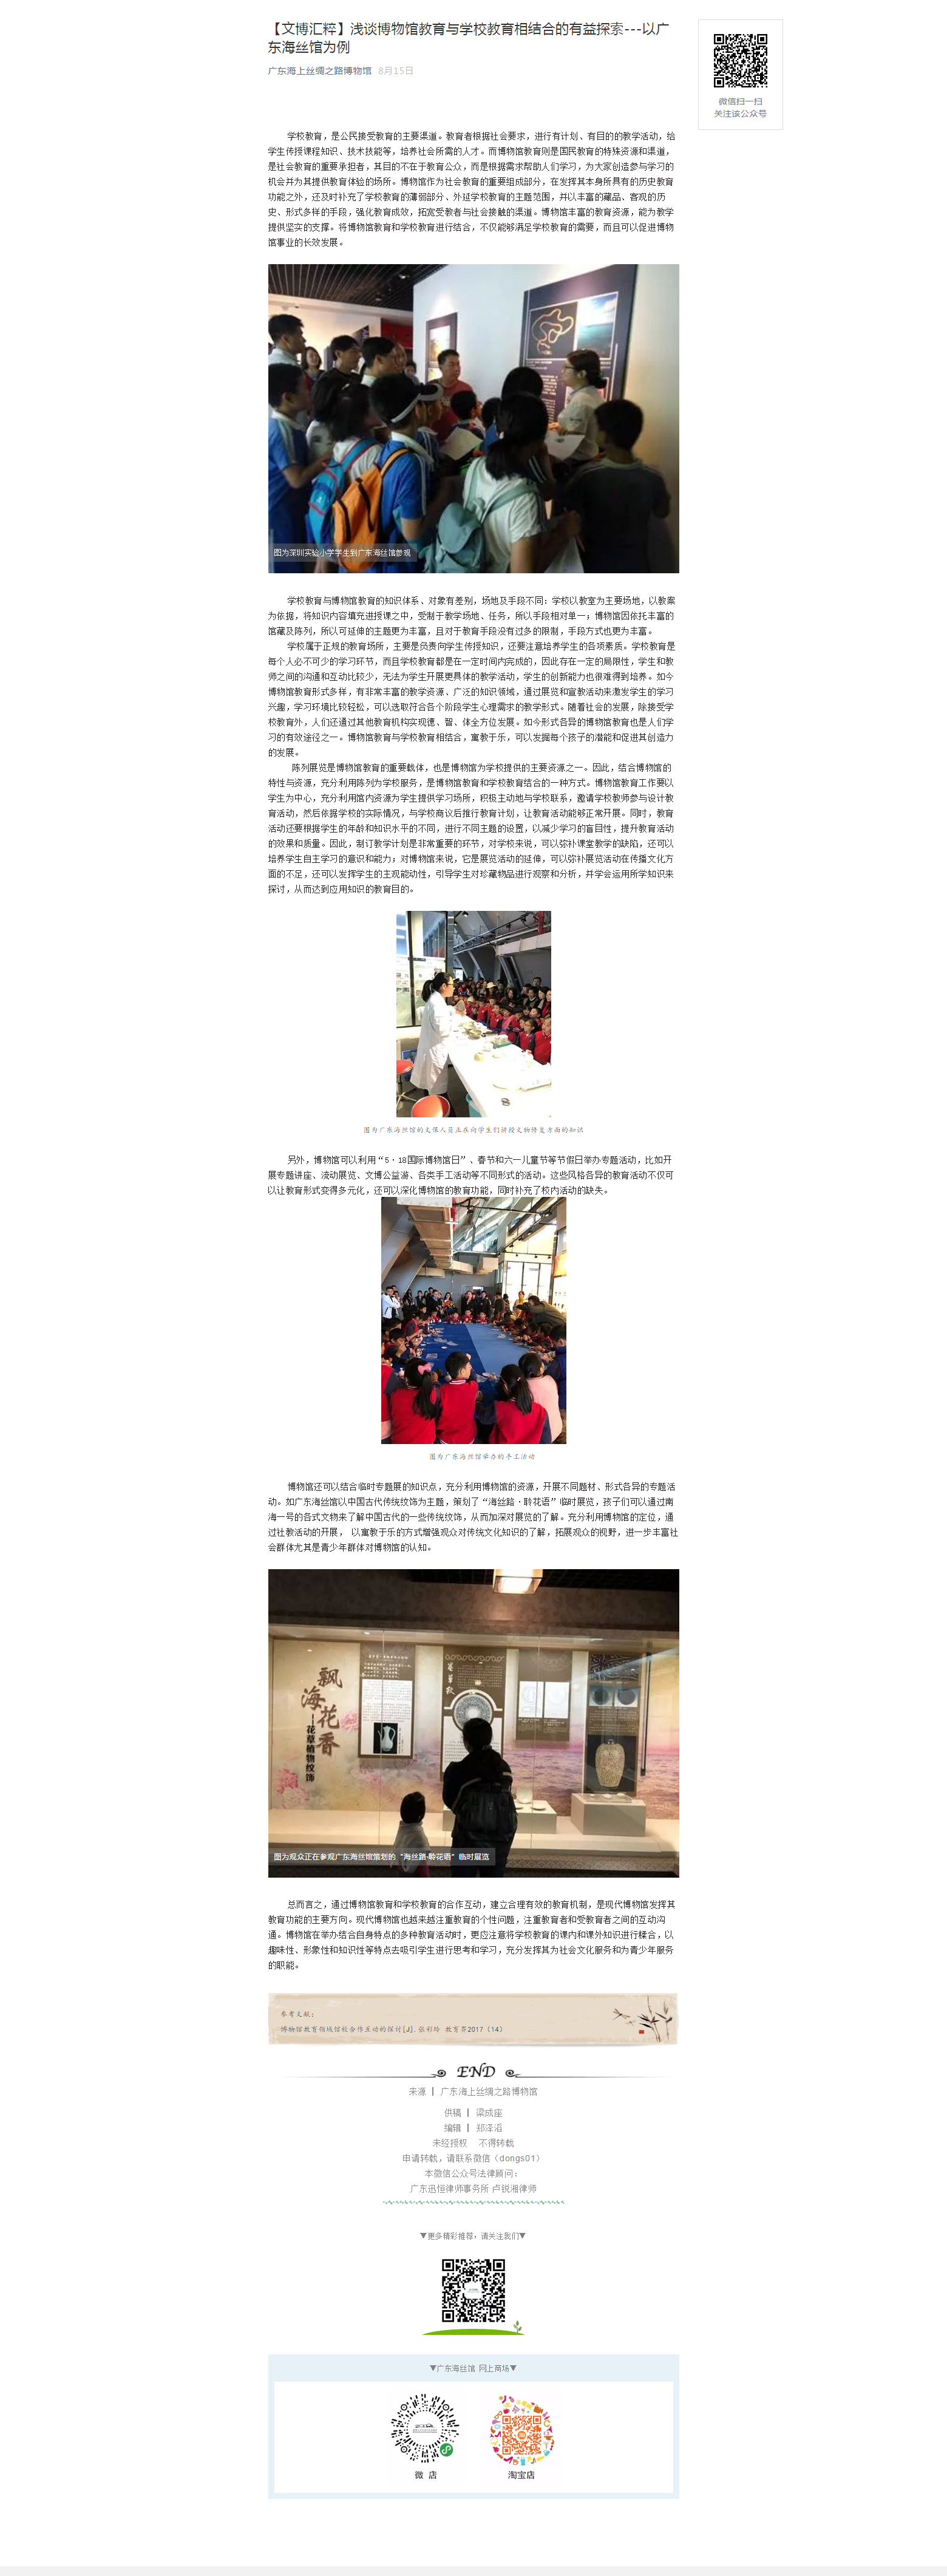 【文博汇粹】浅谈博物馆教育与学校教育相结合的有益探索---以广东海丝馆为例.png